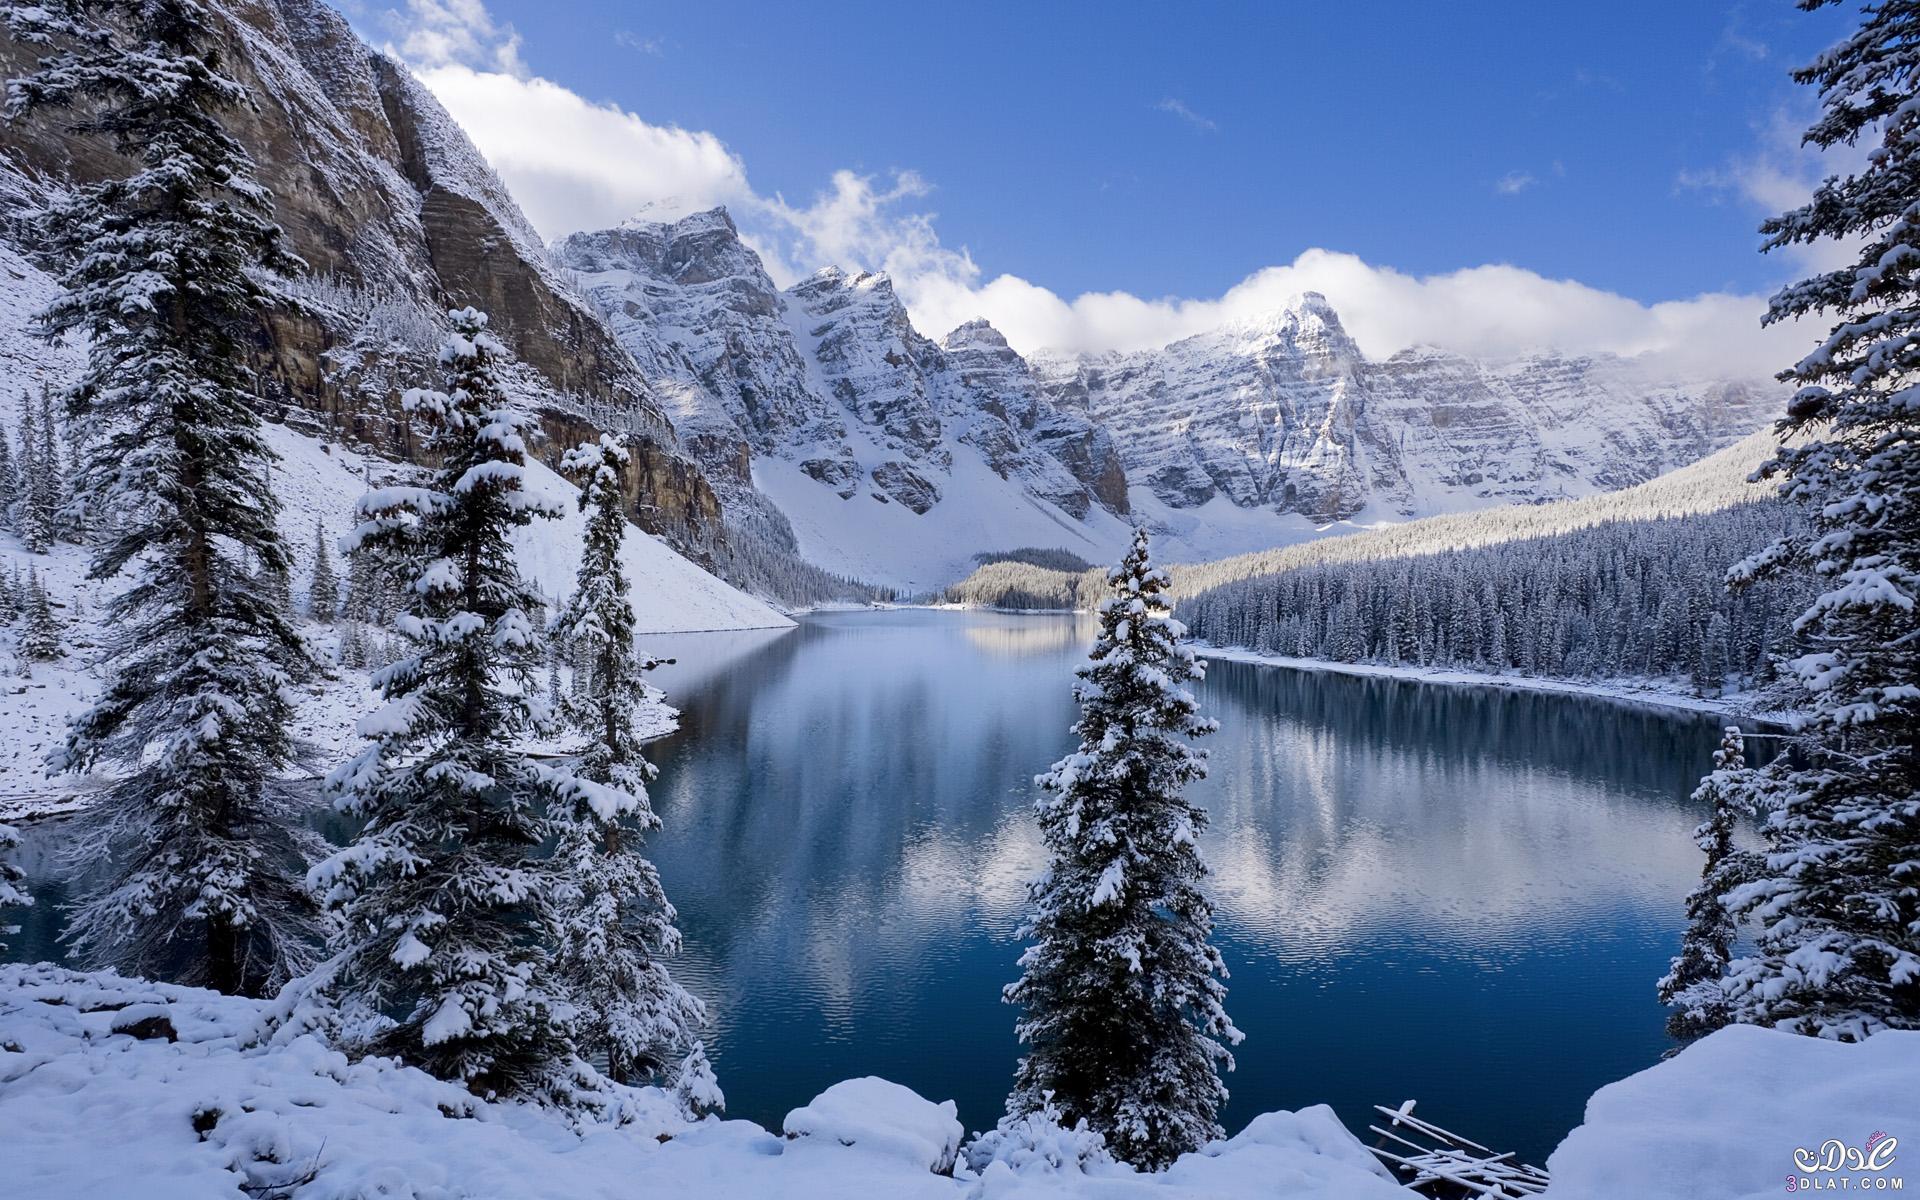 صور طبيعة خلابة مغطاة بالثلج مناظر طبيعية في الشتاء